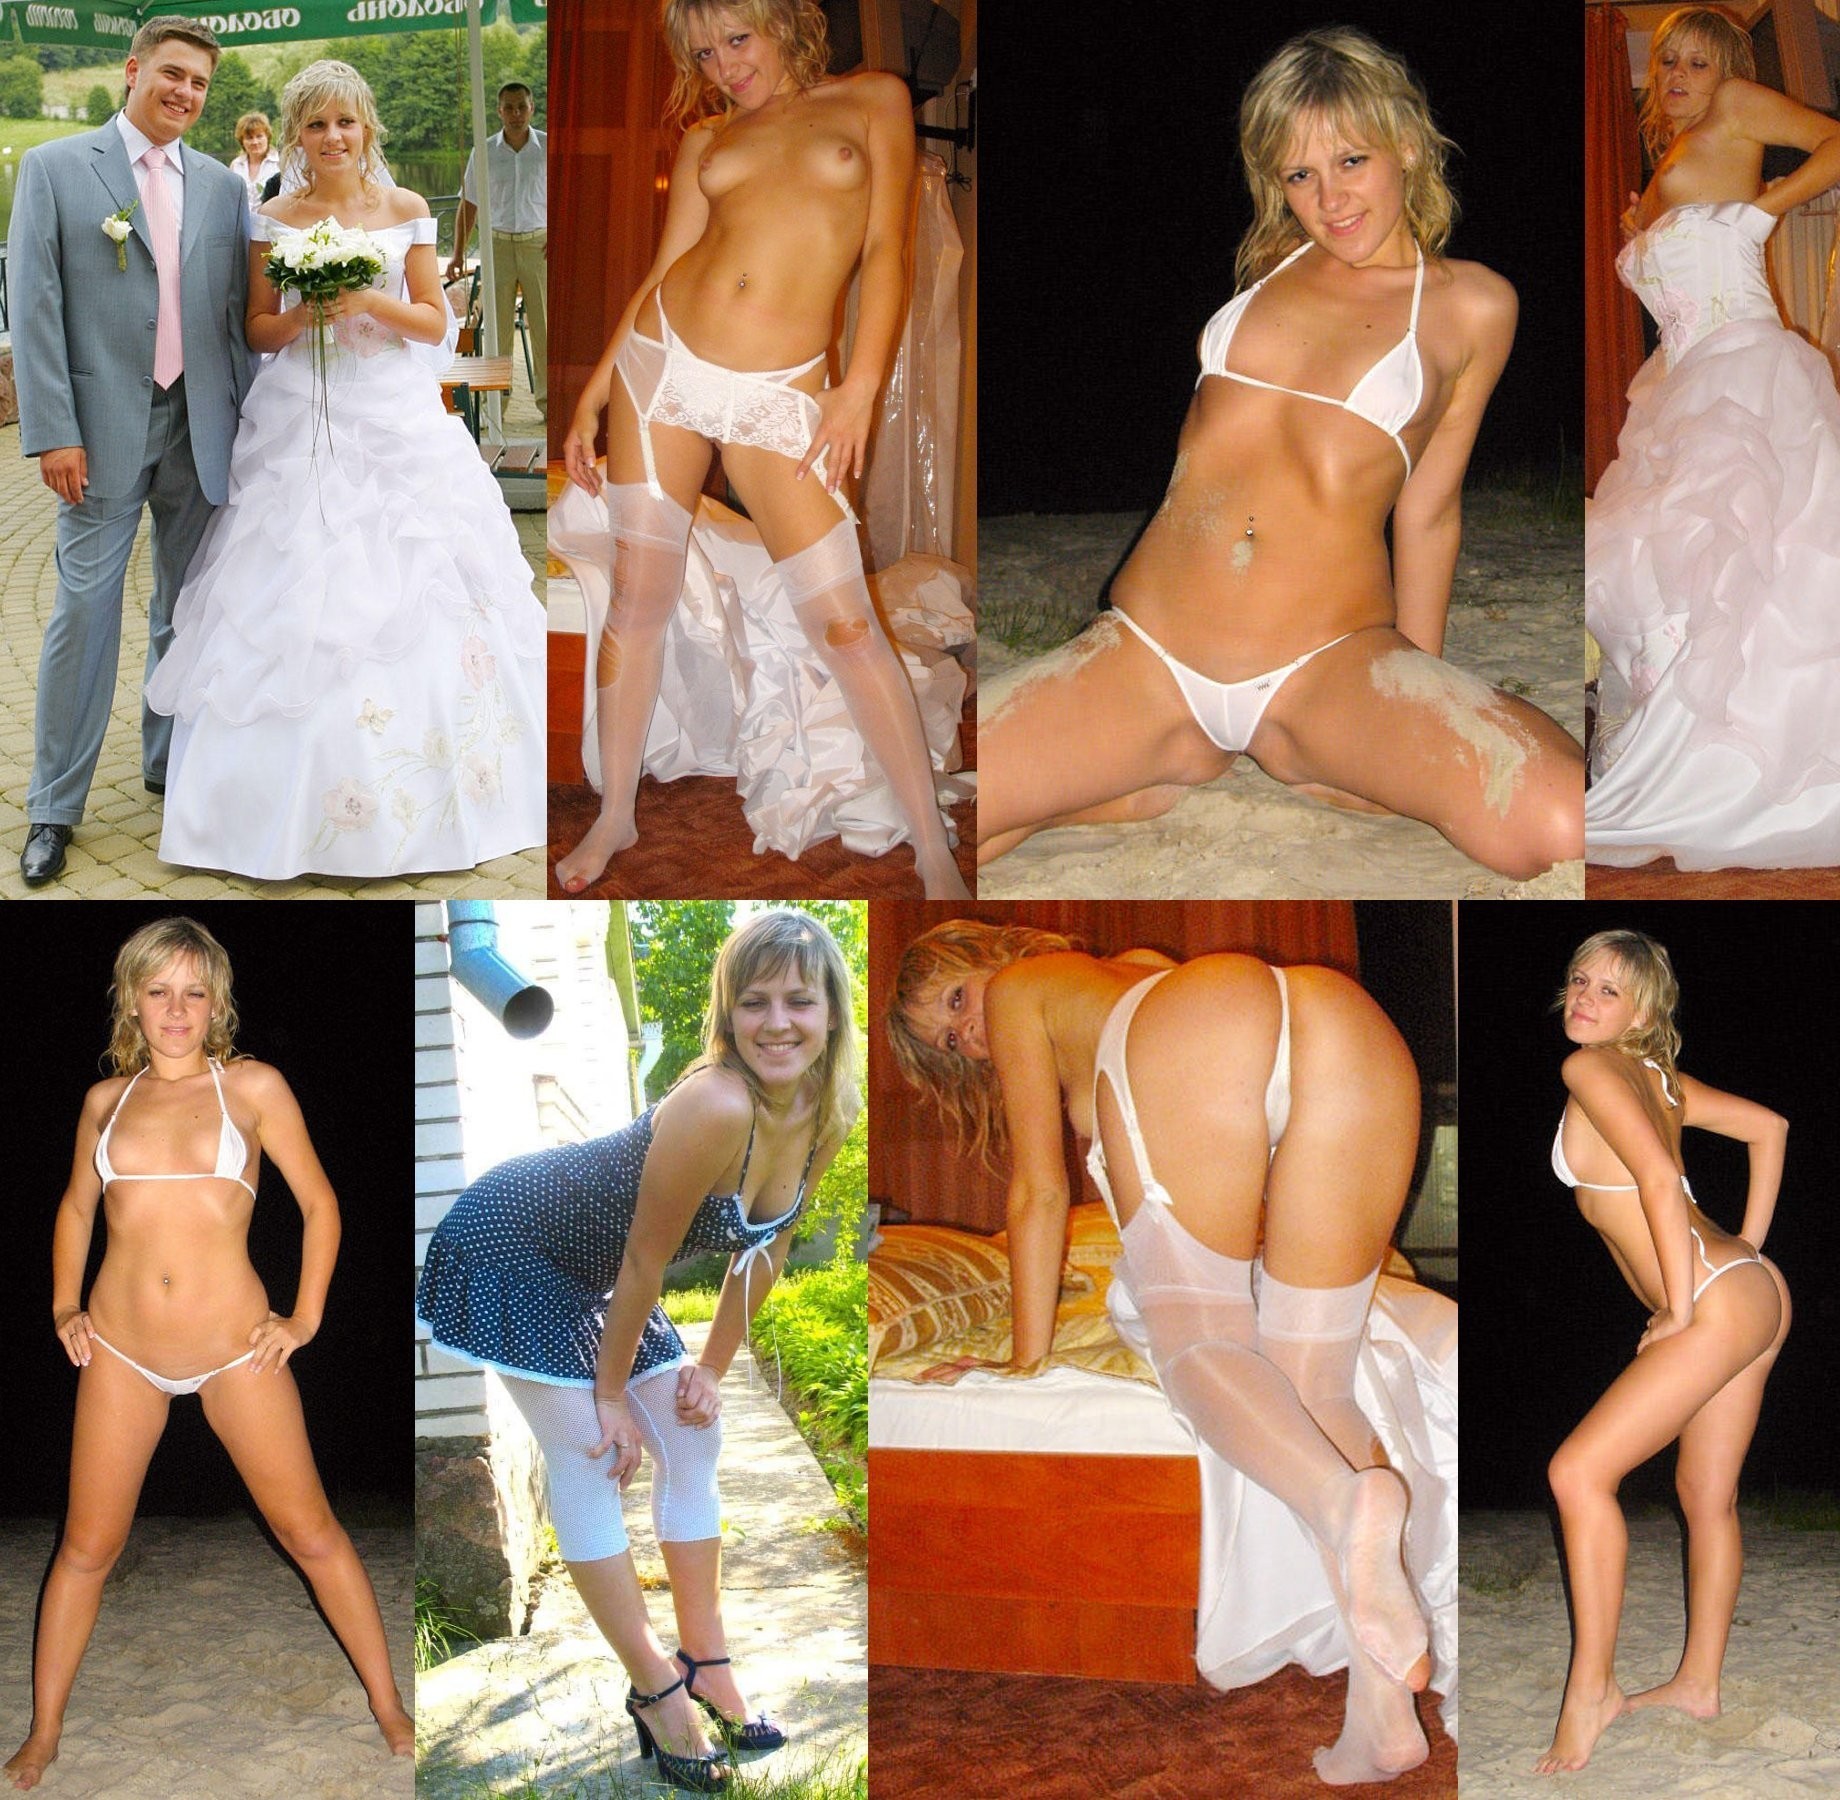 Hot Blonde Gangbang Wedding - just married â€“ WifeBucket | Offical MILF Blog